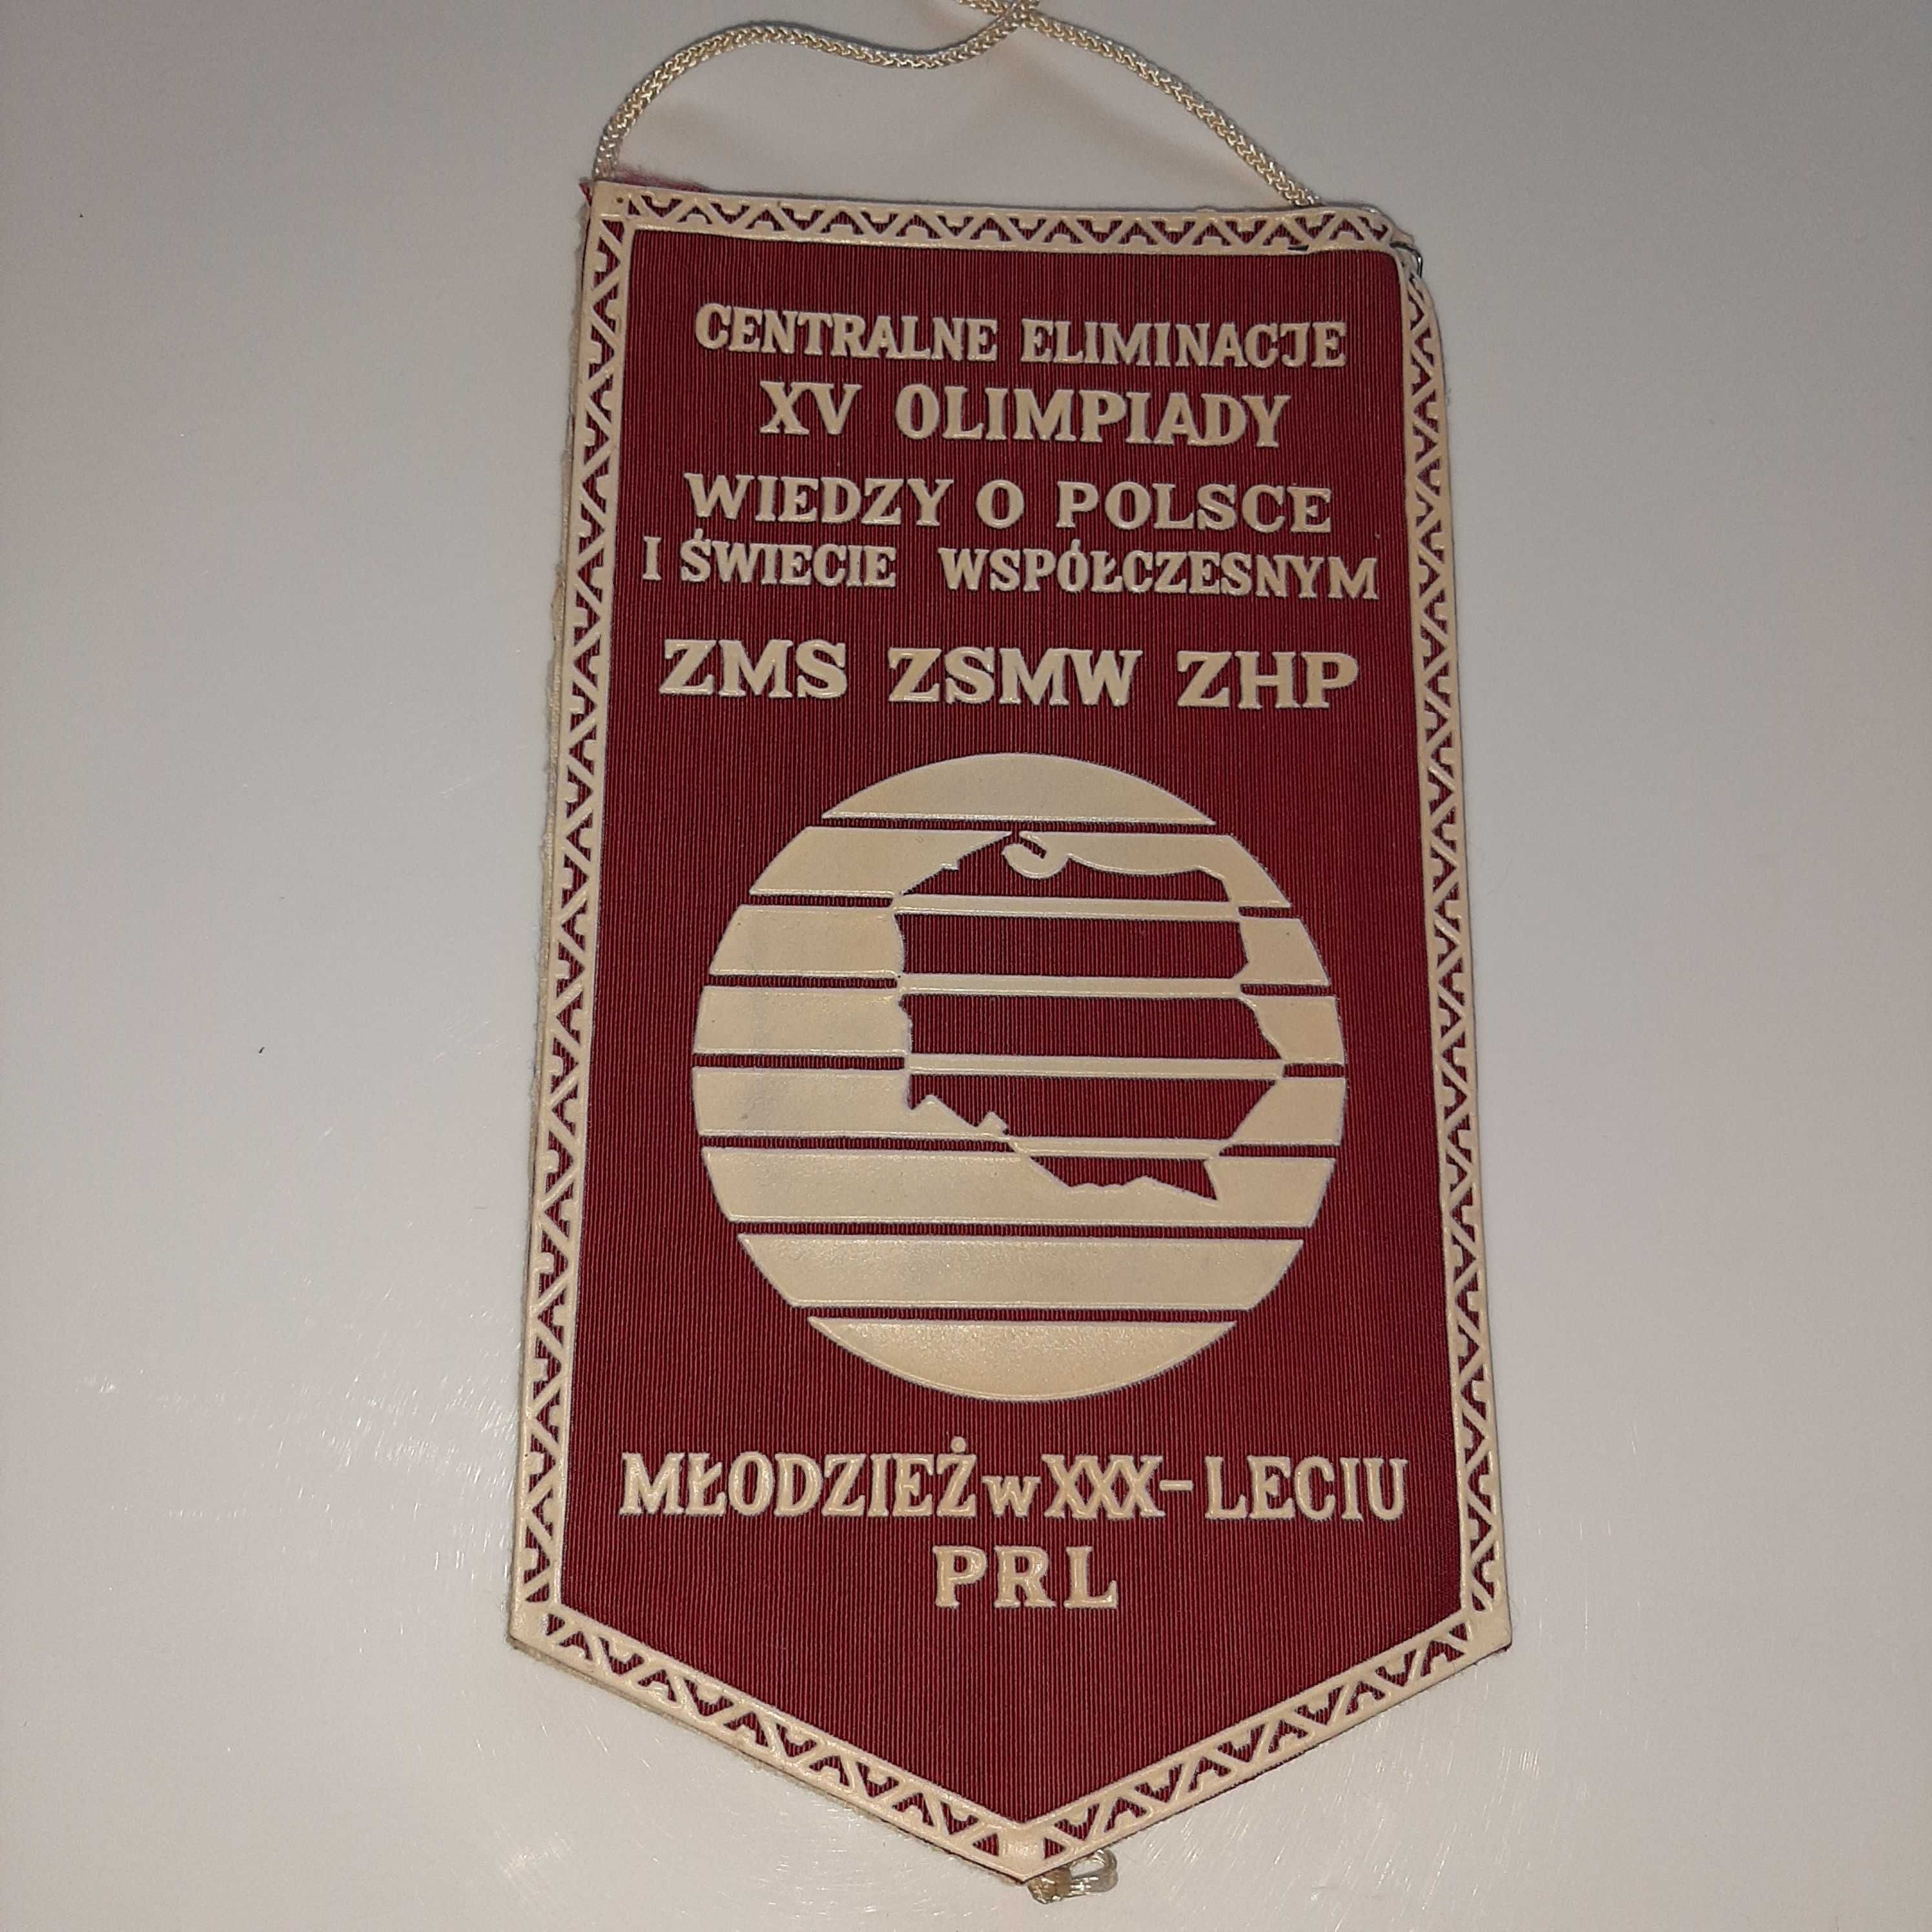 Proporczyk ZHP ZMS Olimpiada Wiedzy o Polsce Lublin Herb